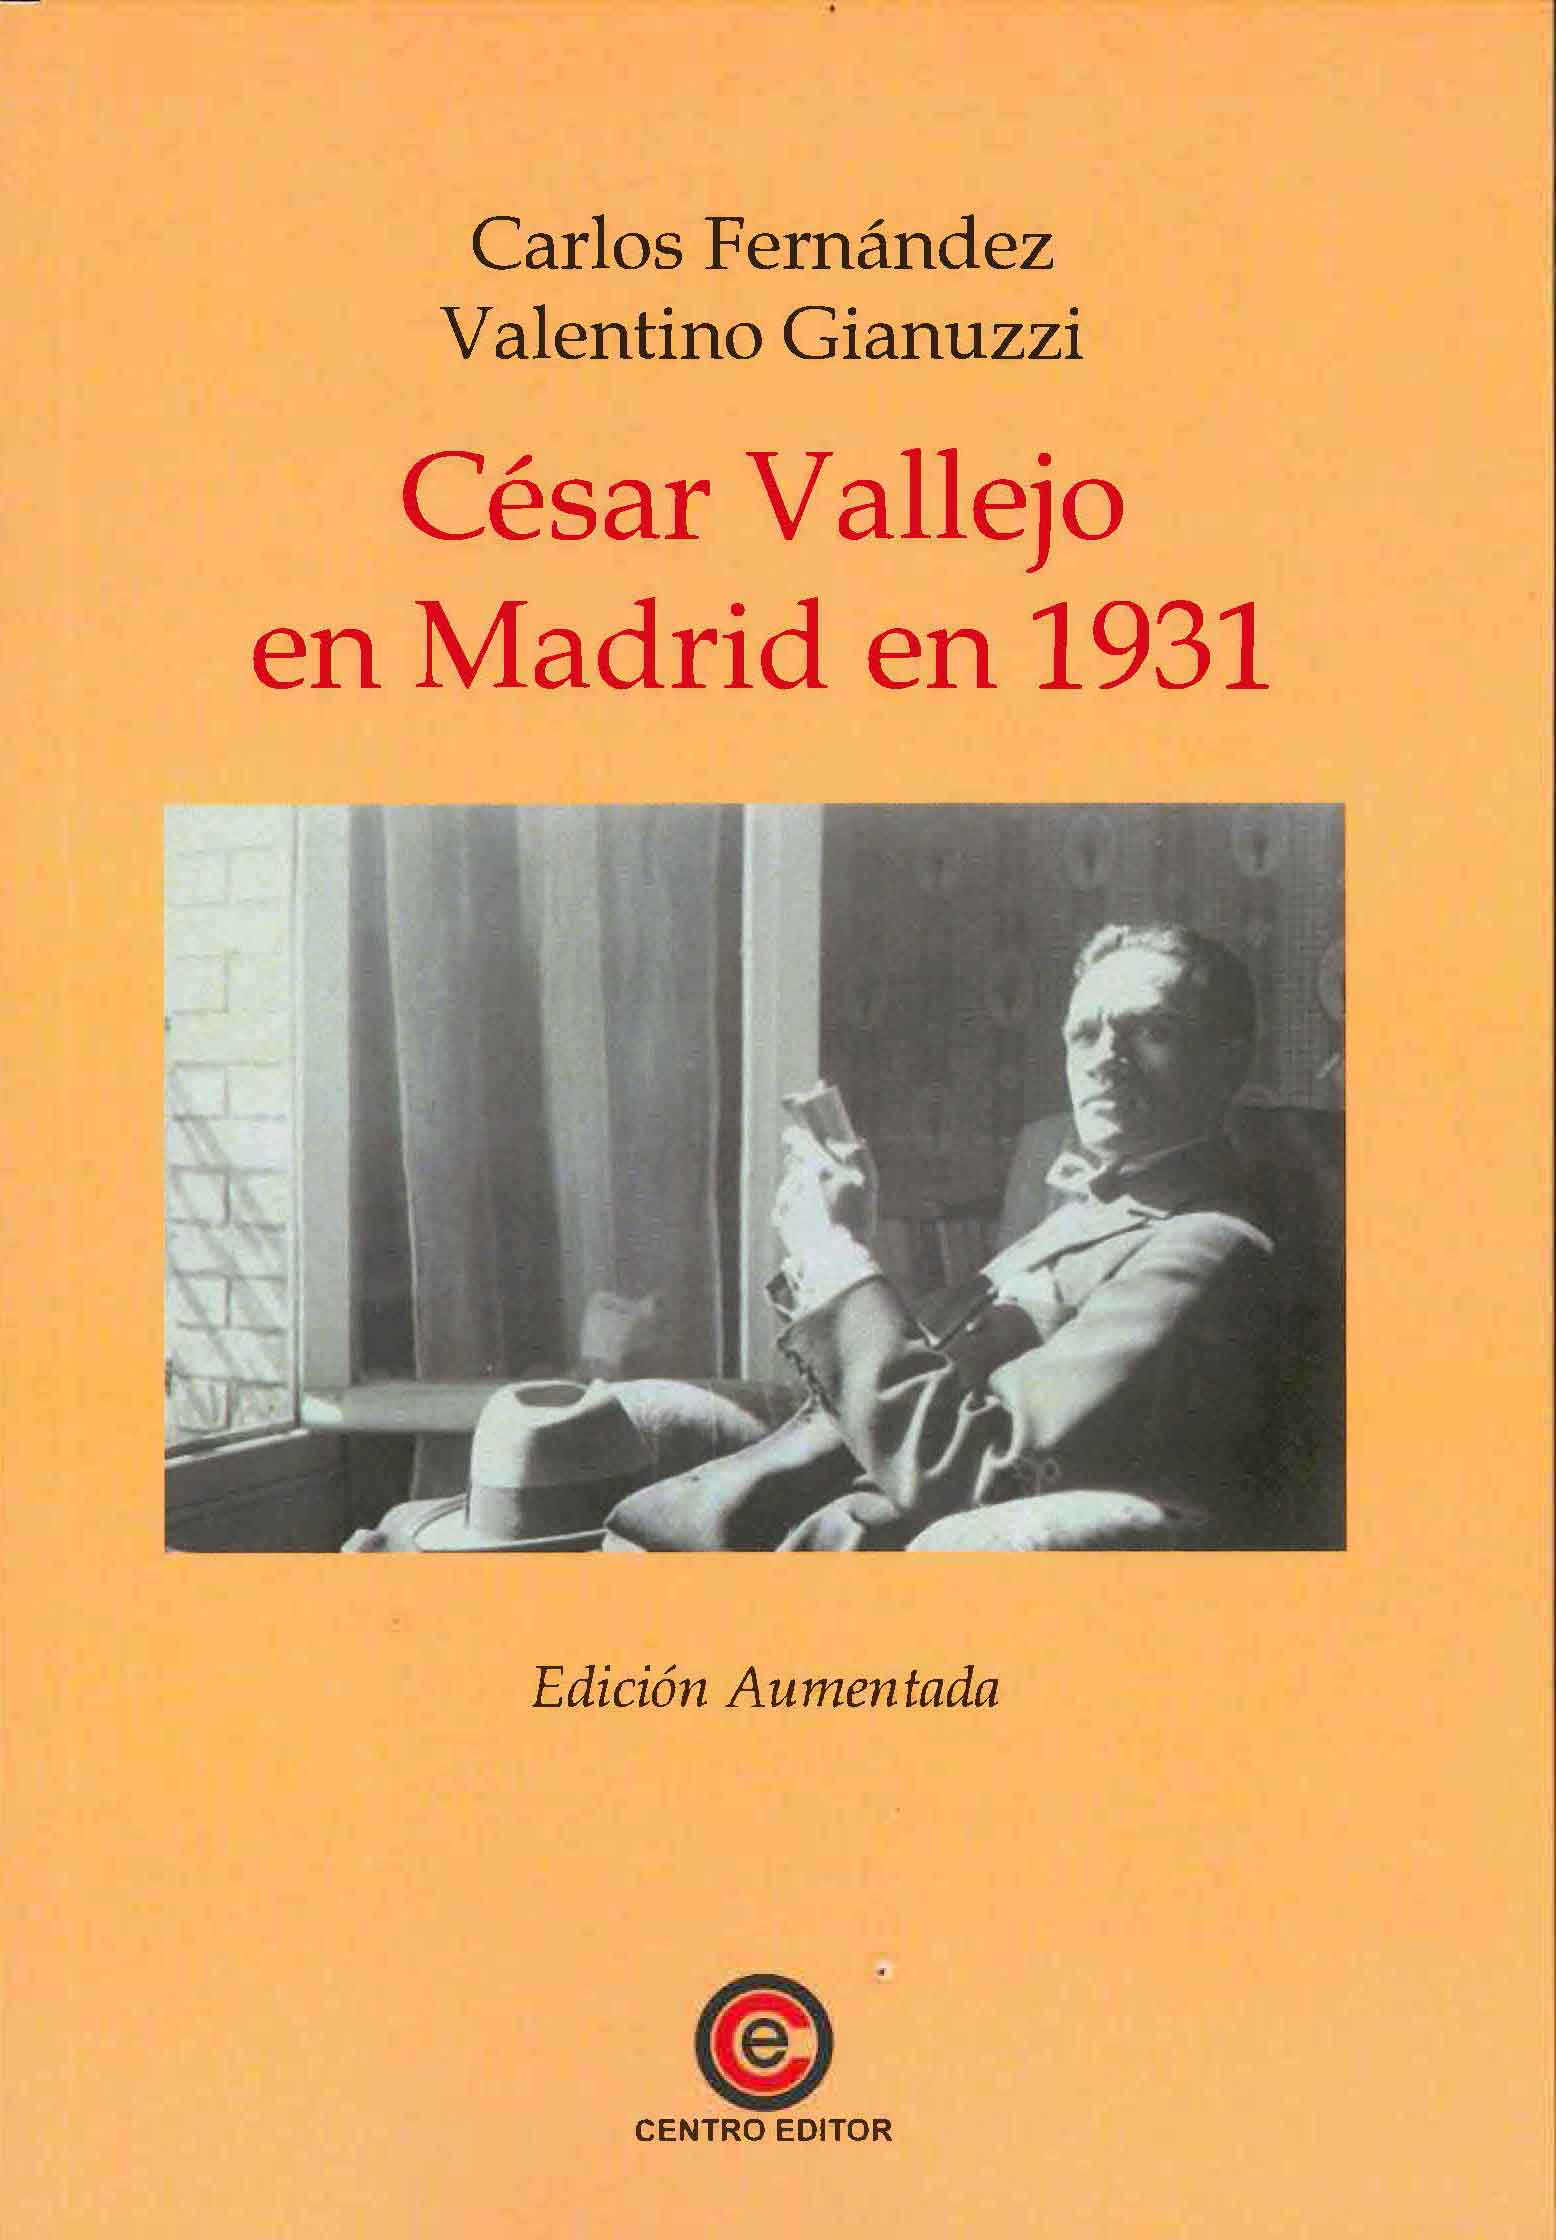 CÉSAR VALLEJO EN MADRID EN 1931